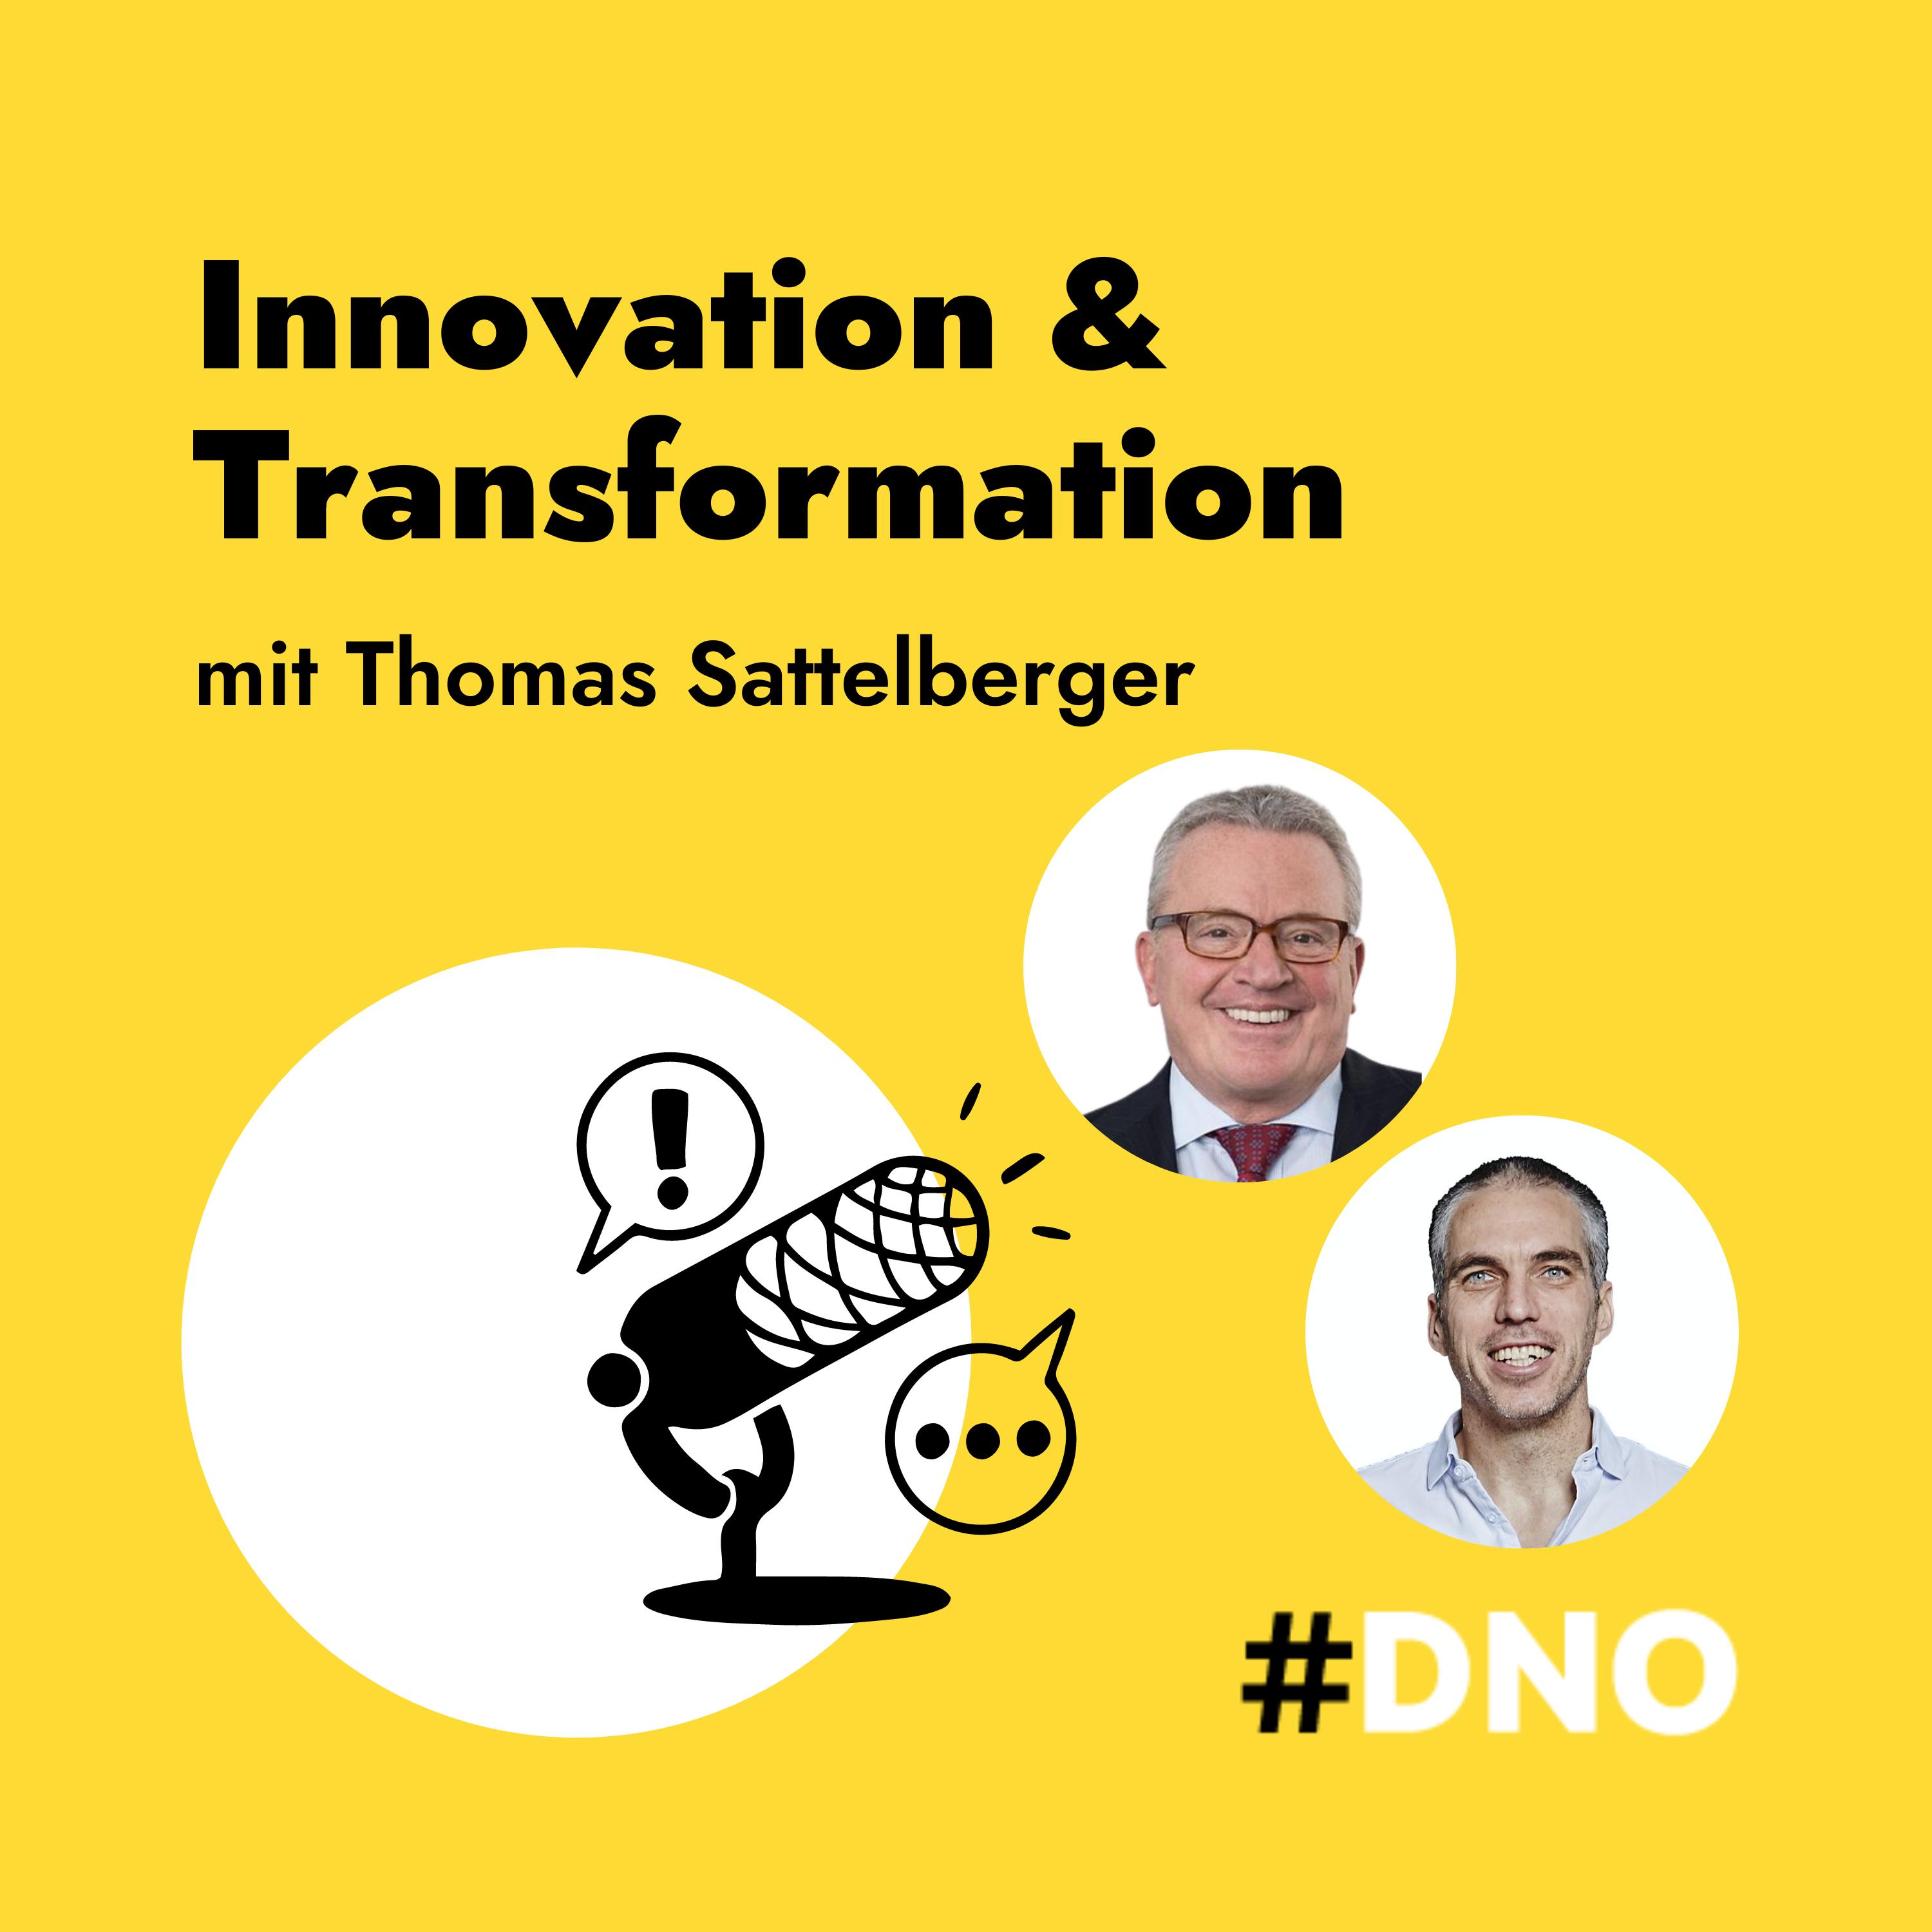 #22 Wie Innovation und Transformation gelingen mit Thomas Sattelberger